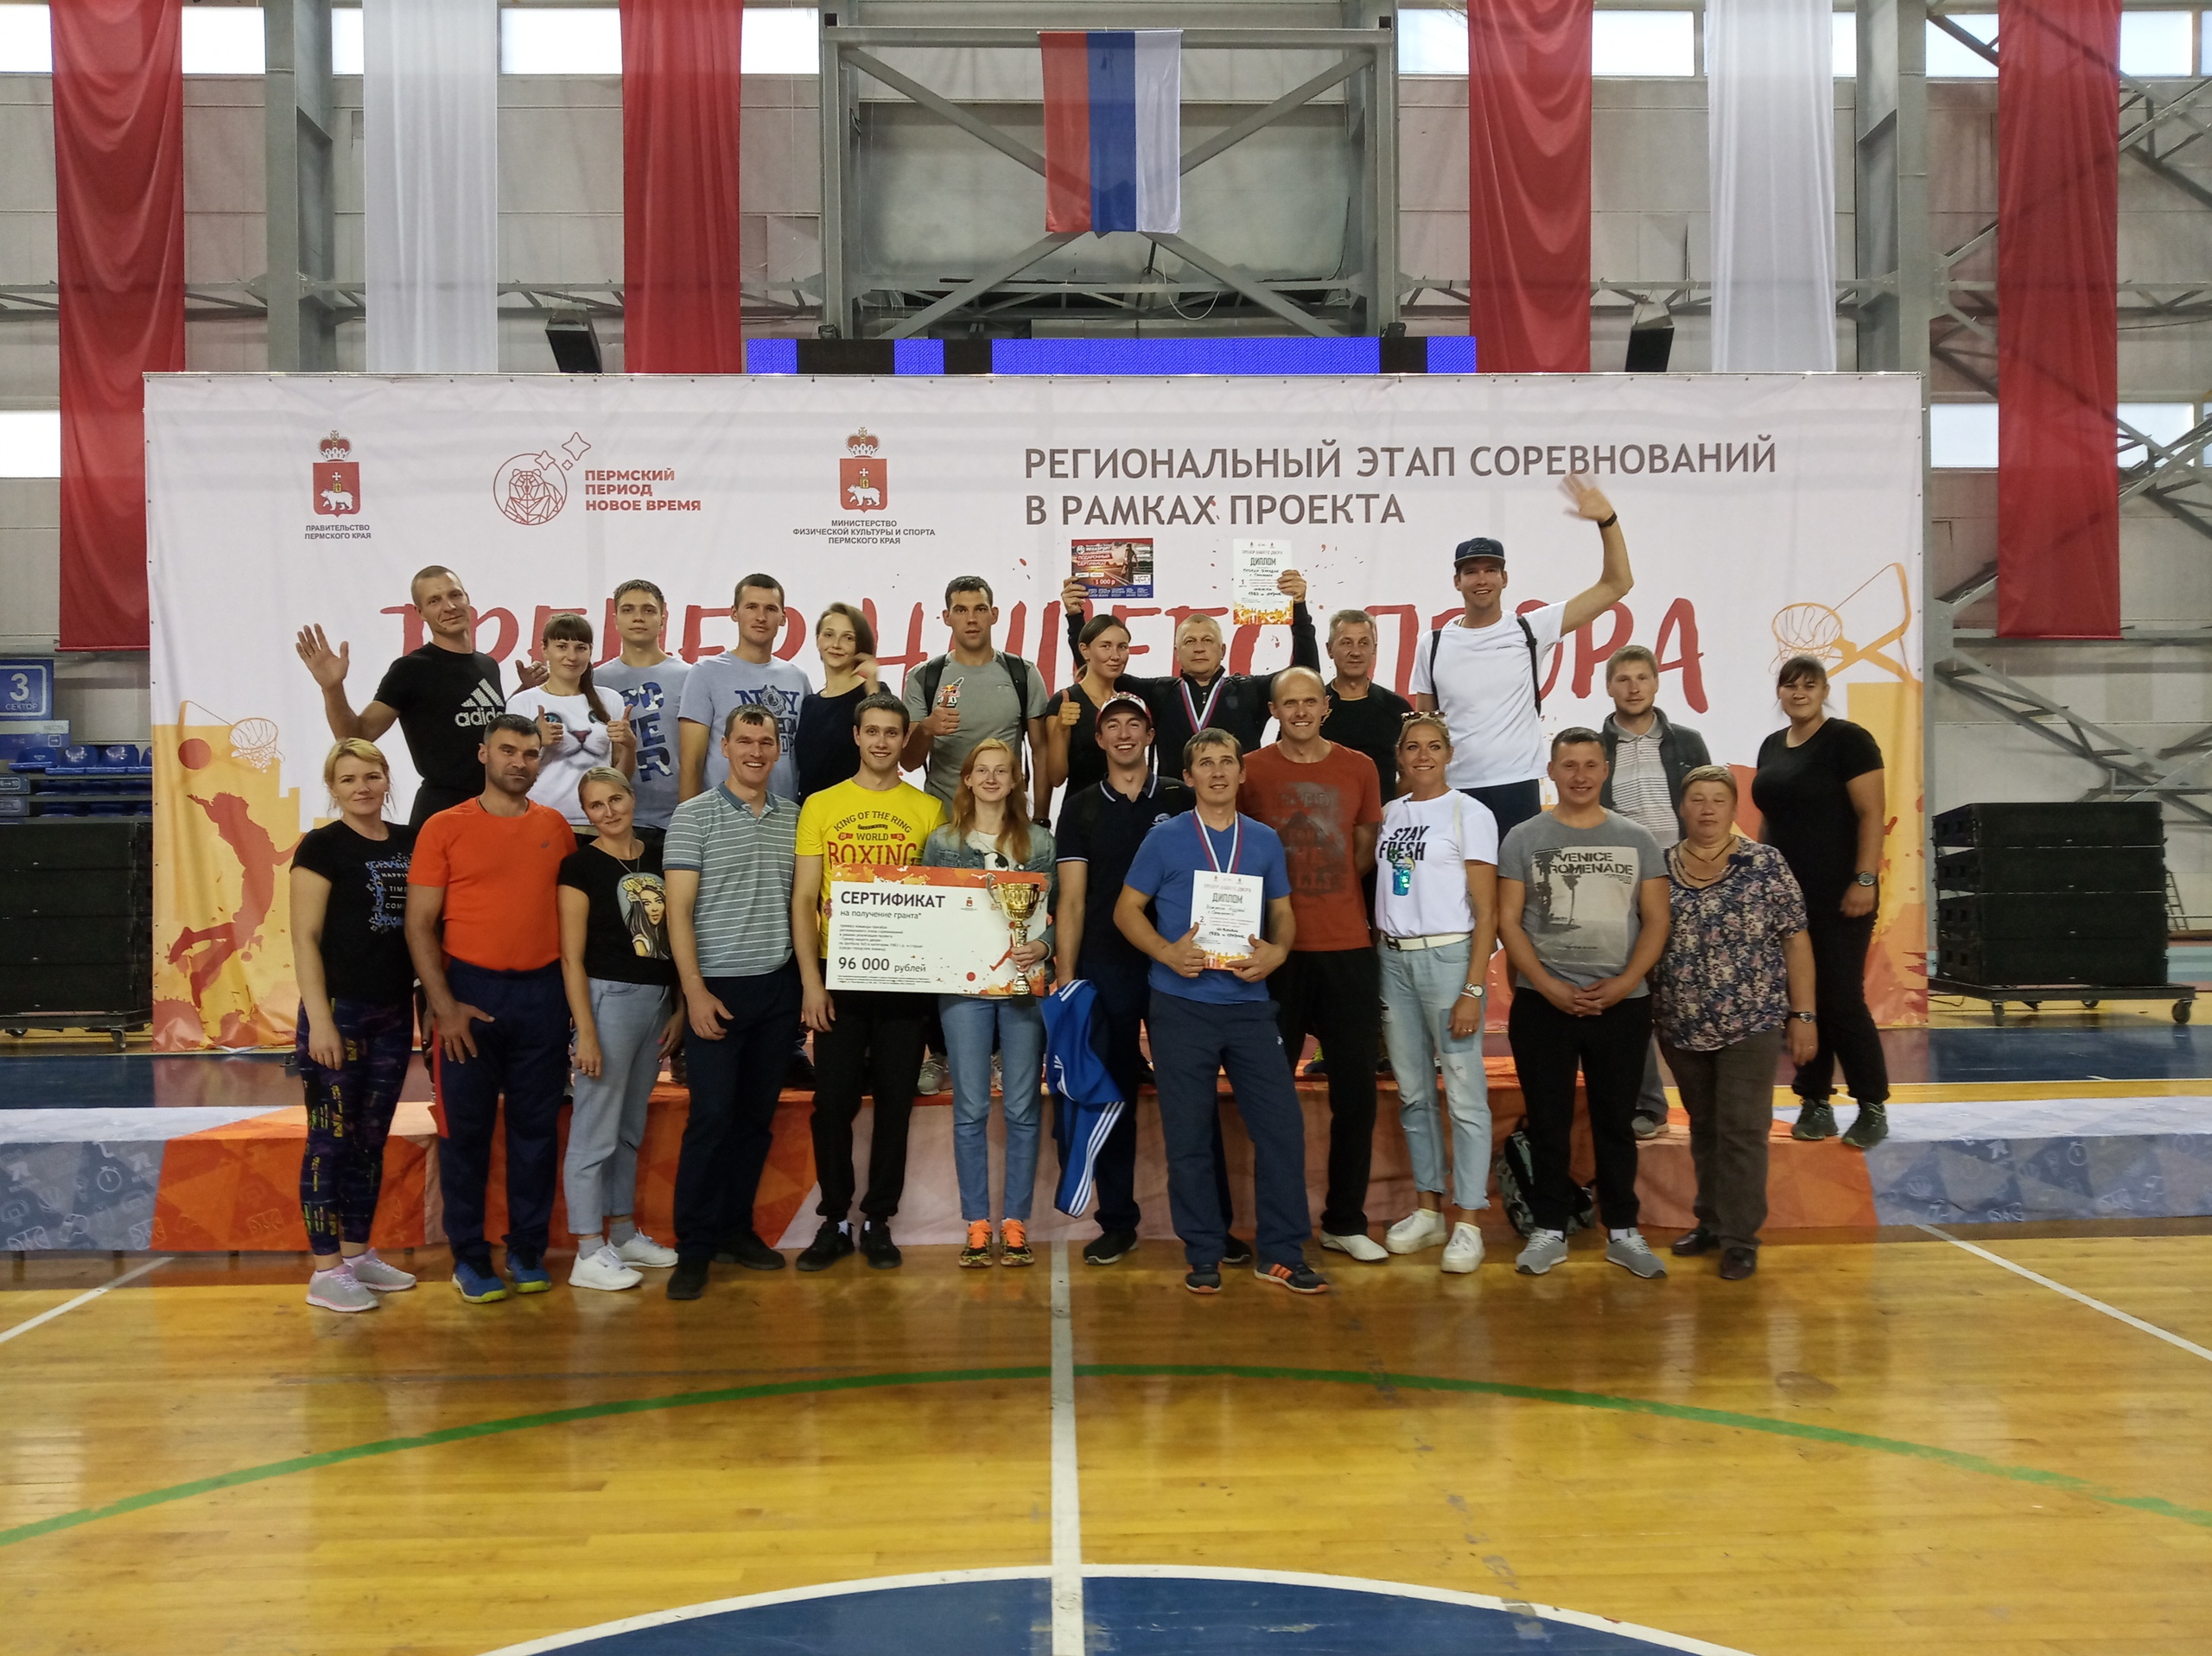 24 августа 2019 г. в г.Пермь состоялся Региональный этап соревнований в рамках реализации проекта «Тренер нашего двора» по видам спорта: волейбол, баскетбол, футбол 5х5, воркаут.